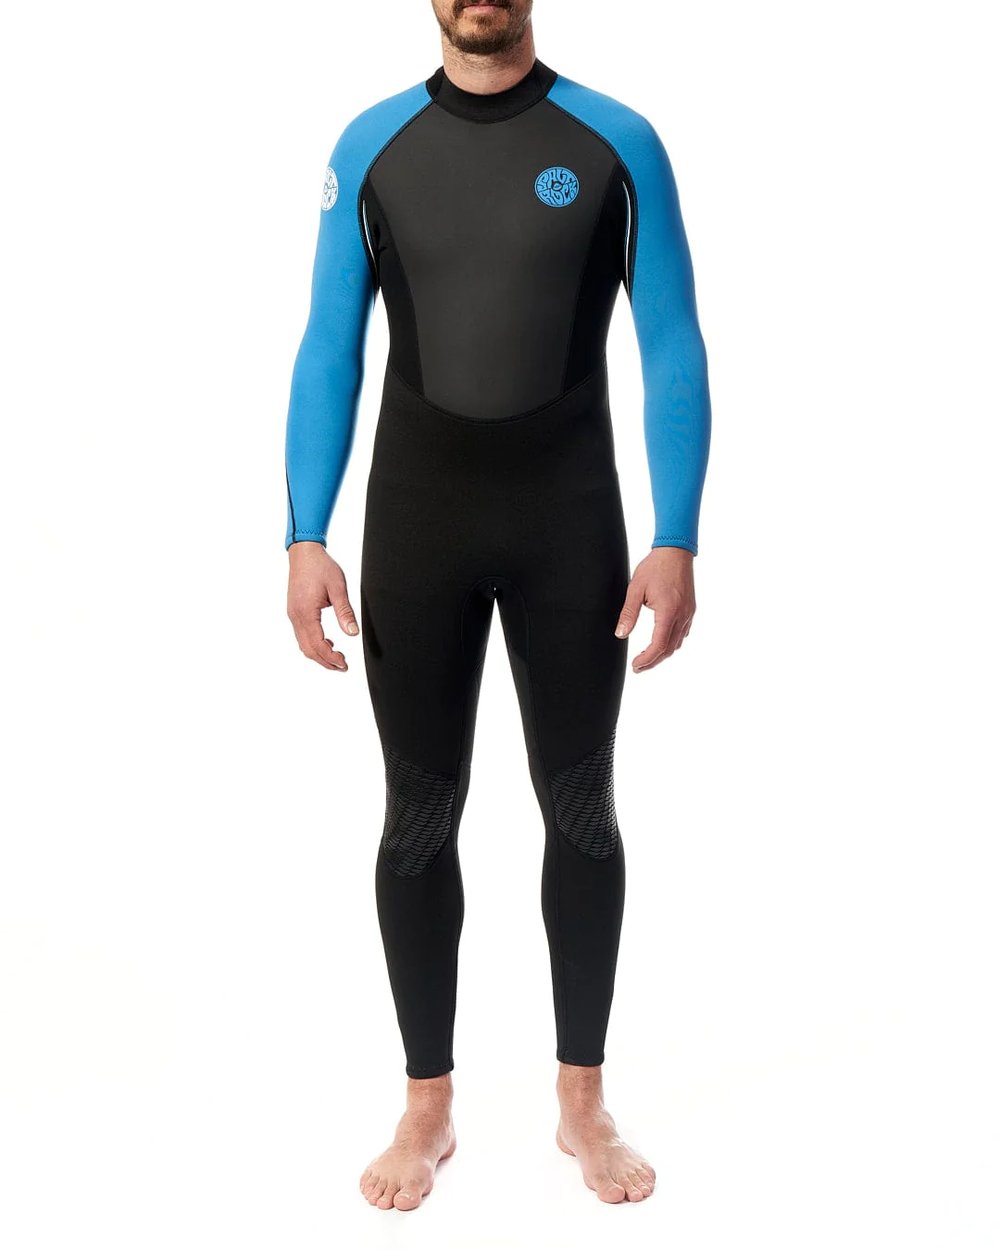 Saltrock core mens 3/2 wetsuit 